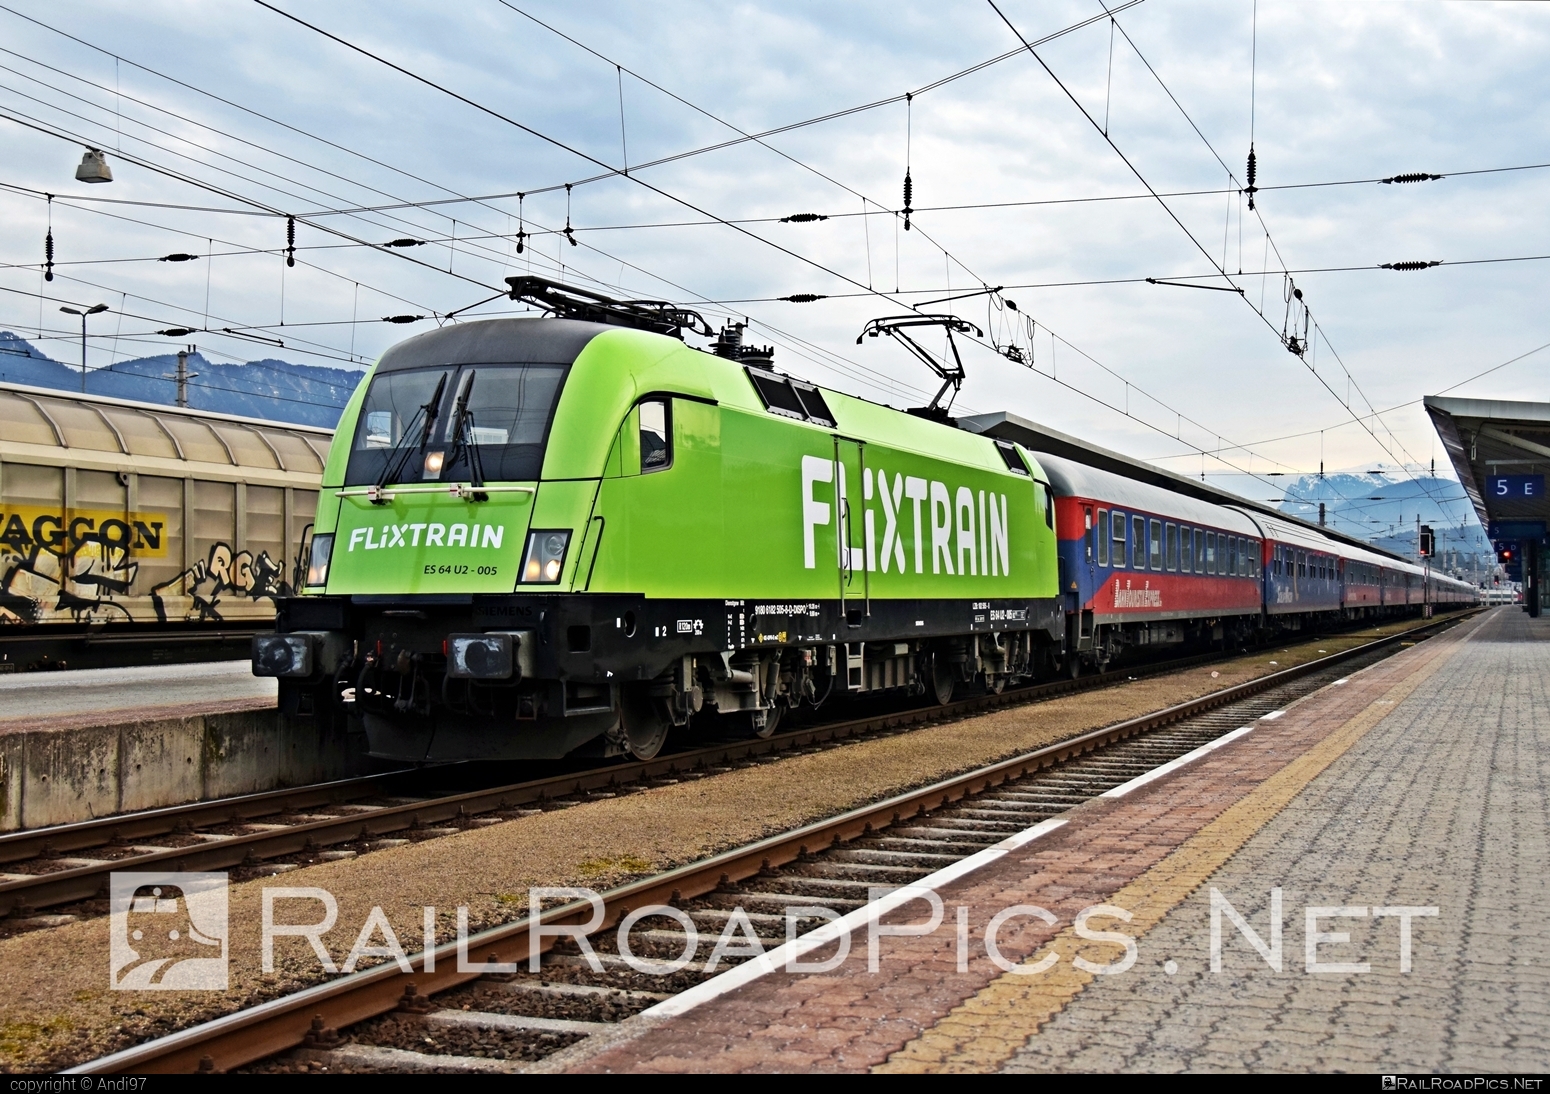 Siemens ES 64 U2 - 182 505 operated by Bahn Touristik Express GmbH #dispolok #es64 #es64u2 #eurosprinter #flixtrain #mitsuirailcapitaleurope #mitsuirailcapitaleuropegmbh #mrce #siemens #siemensEs64 #siemensEs64u2 #siemenstaurus #taurus #tauruslocomotive